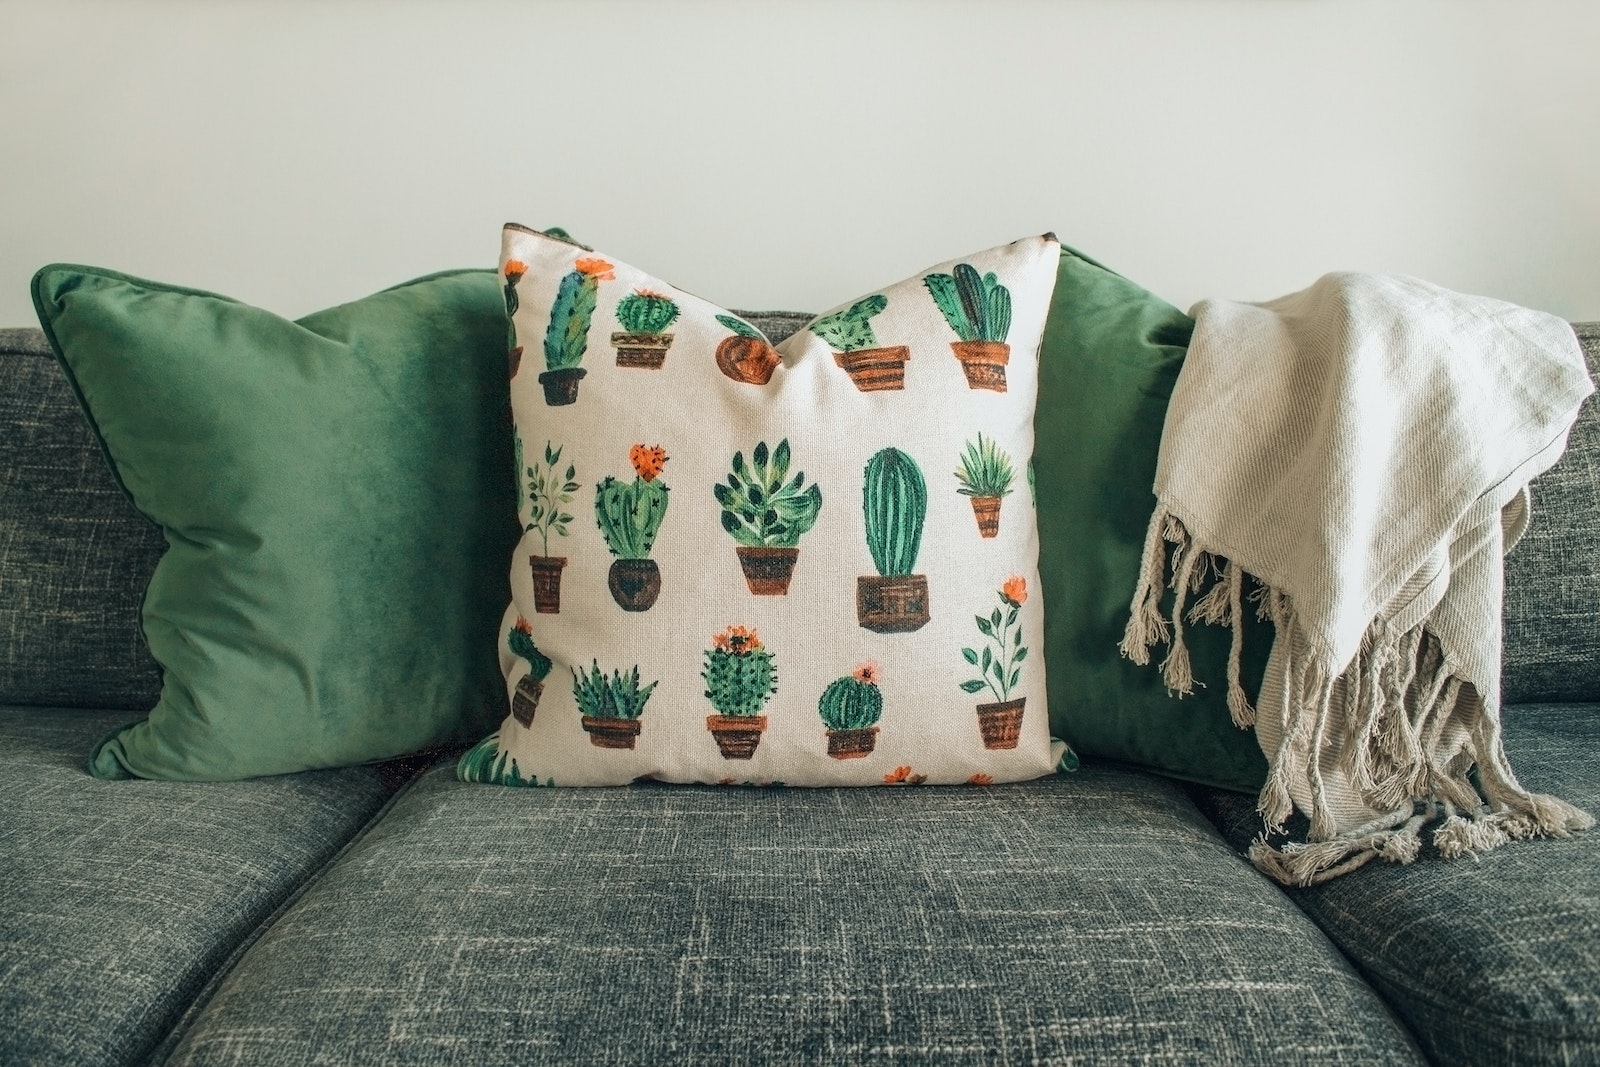 Comment décorer un canapé avec des coussins ?